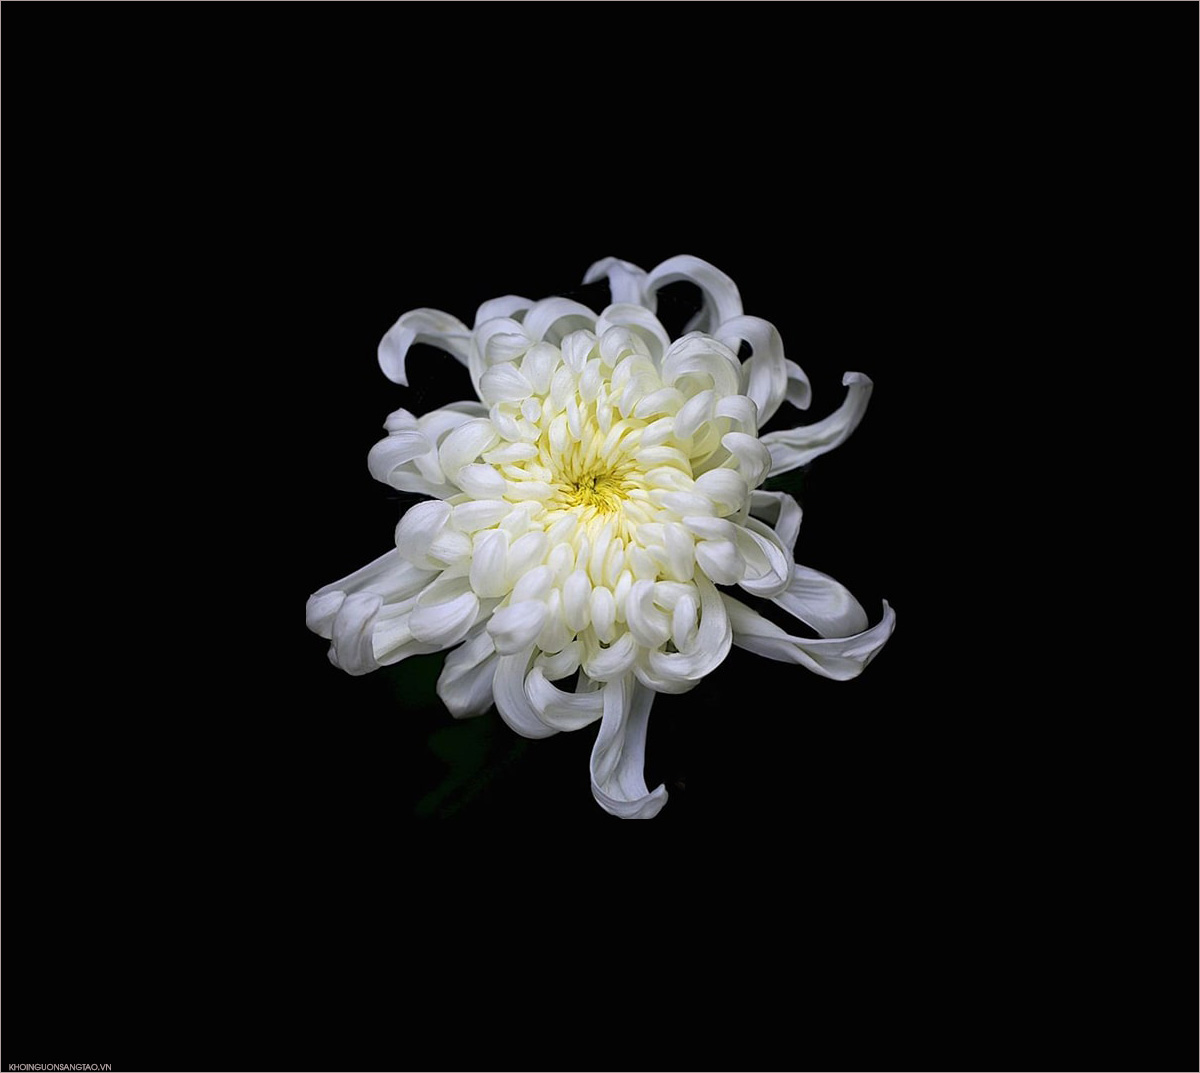 Tranh nhiếp ảnh hoa Cúc trắng đen